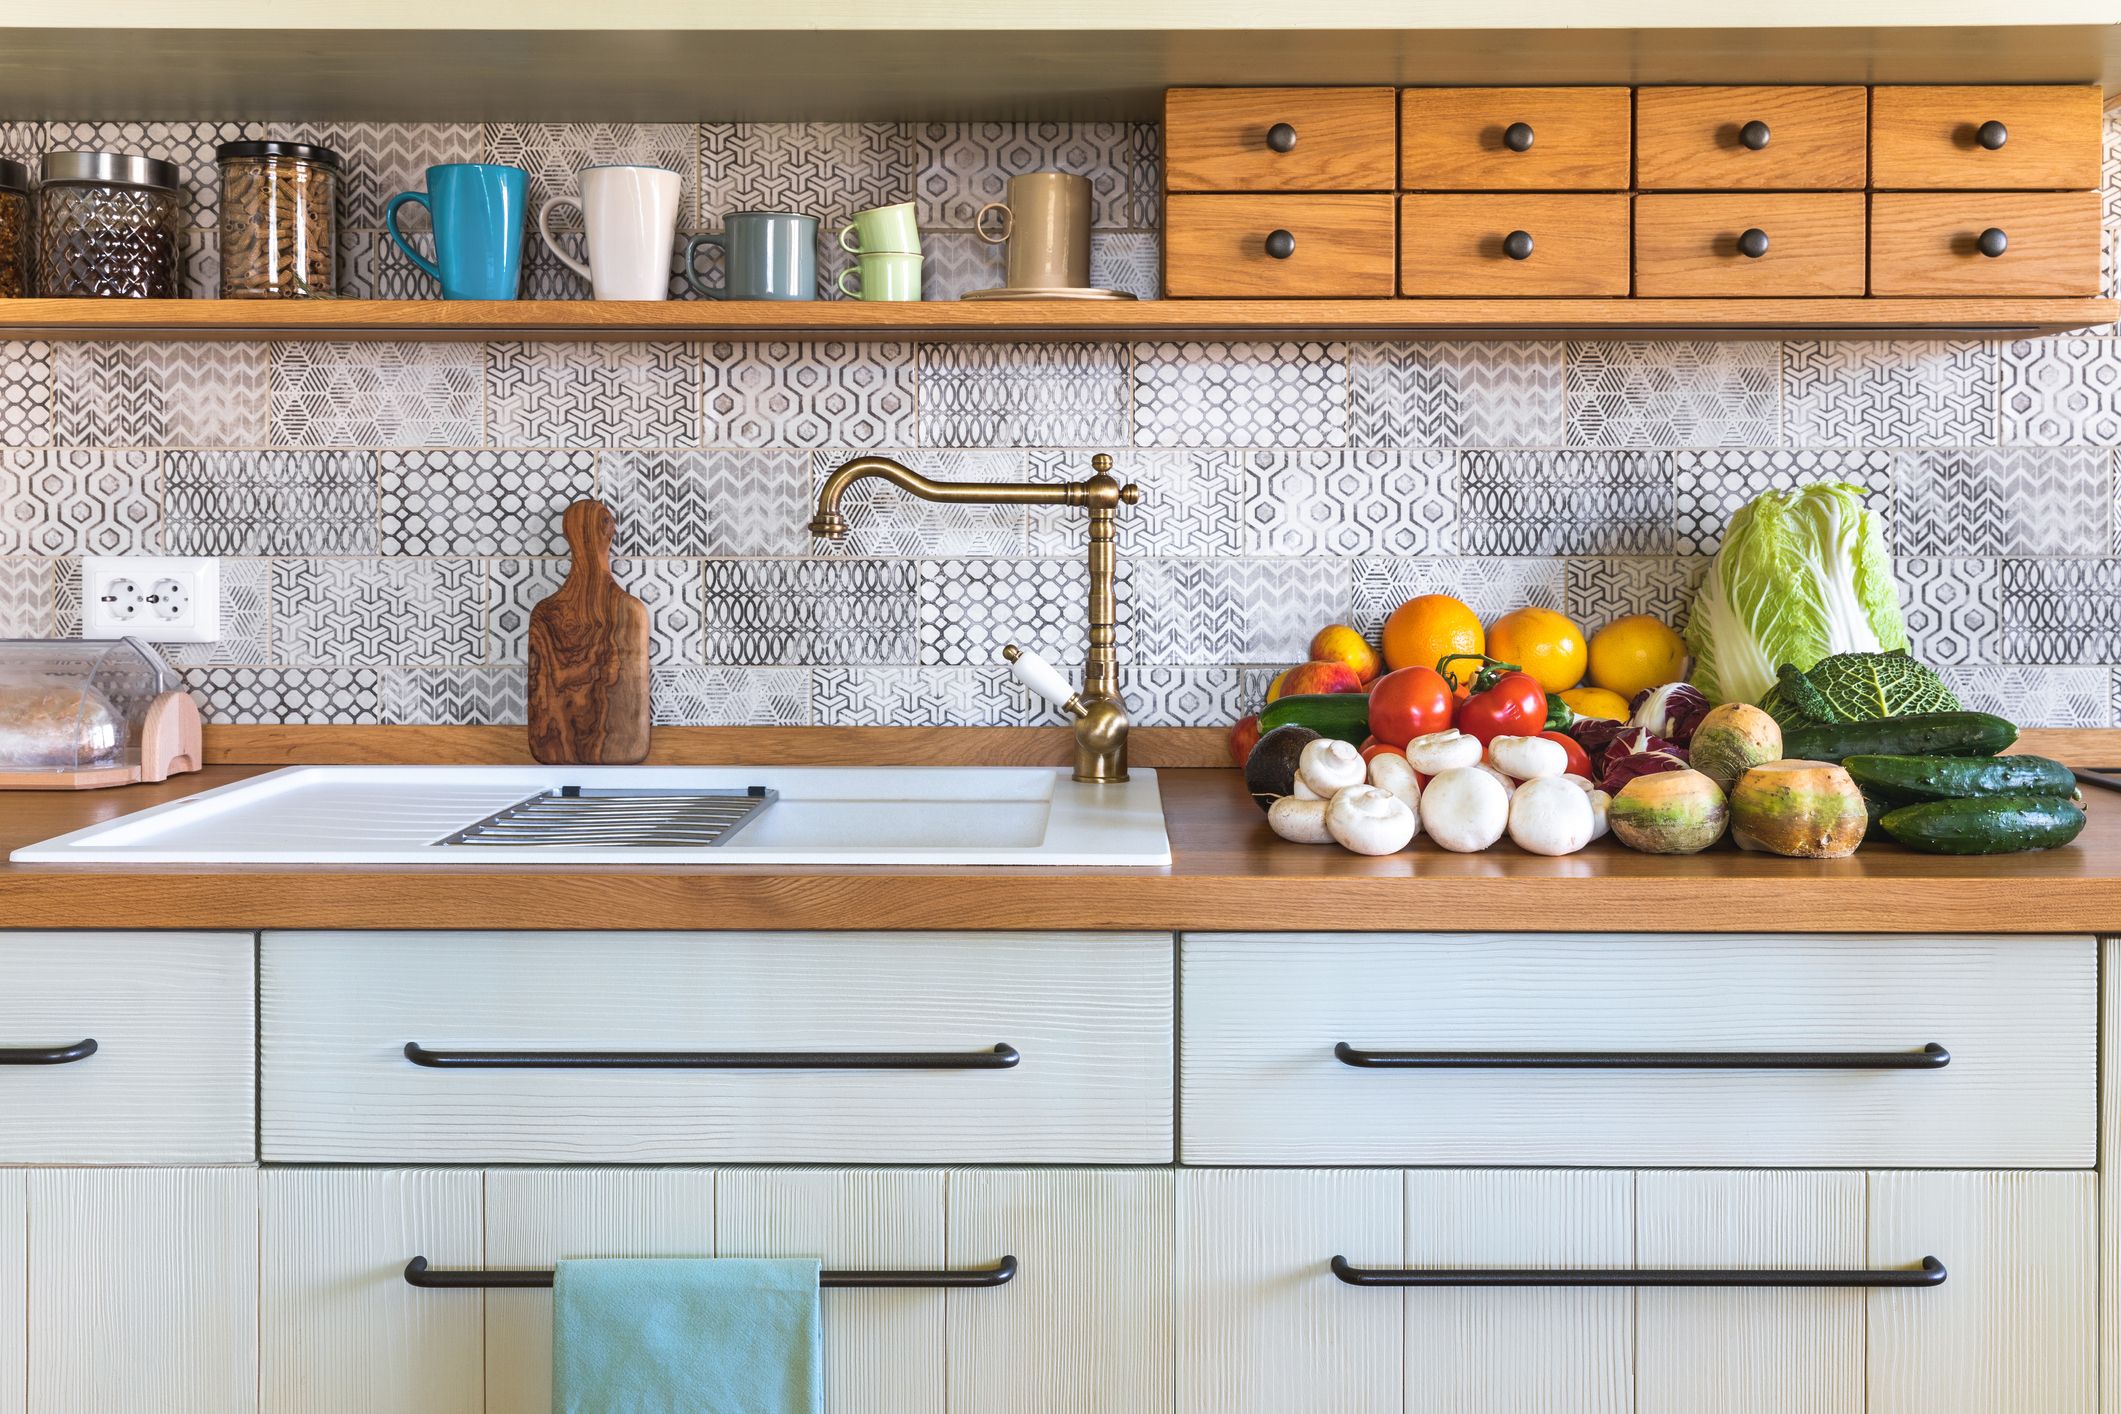 40 Diy Kitchen Décor Ideas - Best Ways To Decorate Your Kitchen